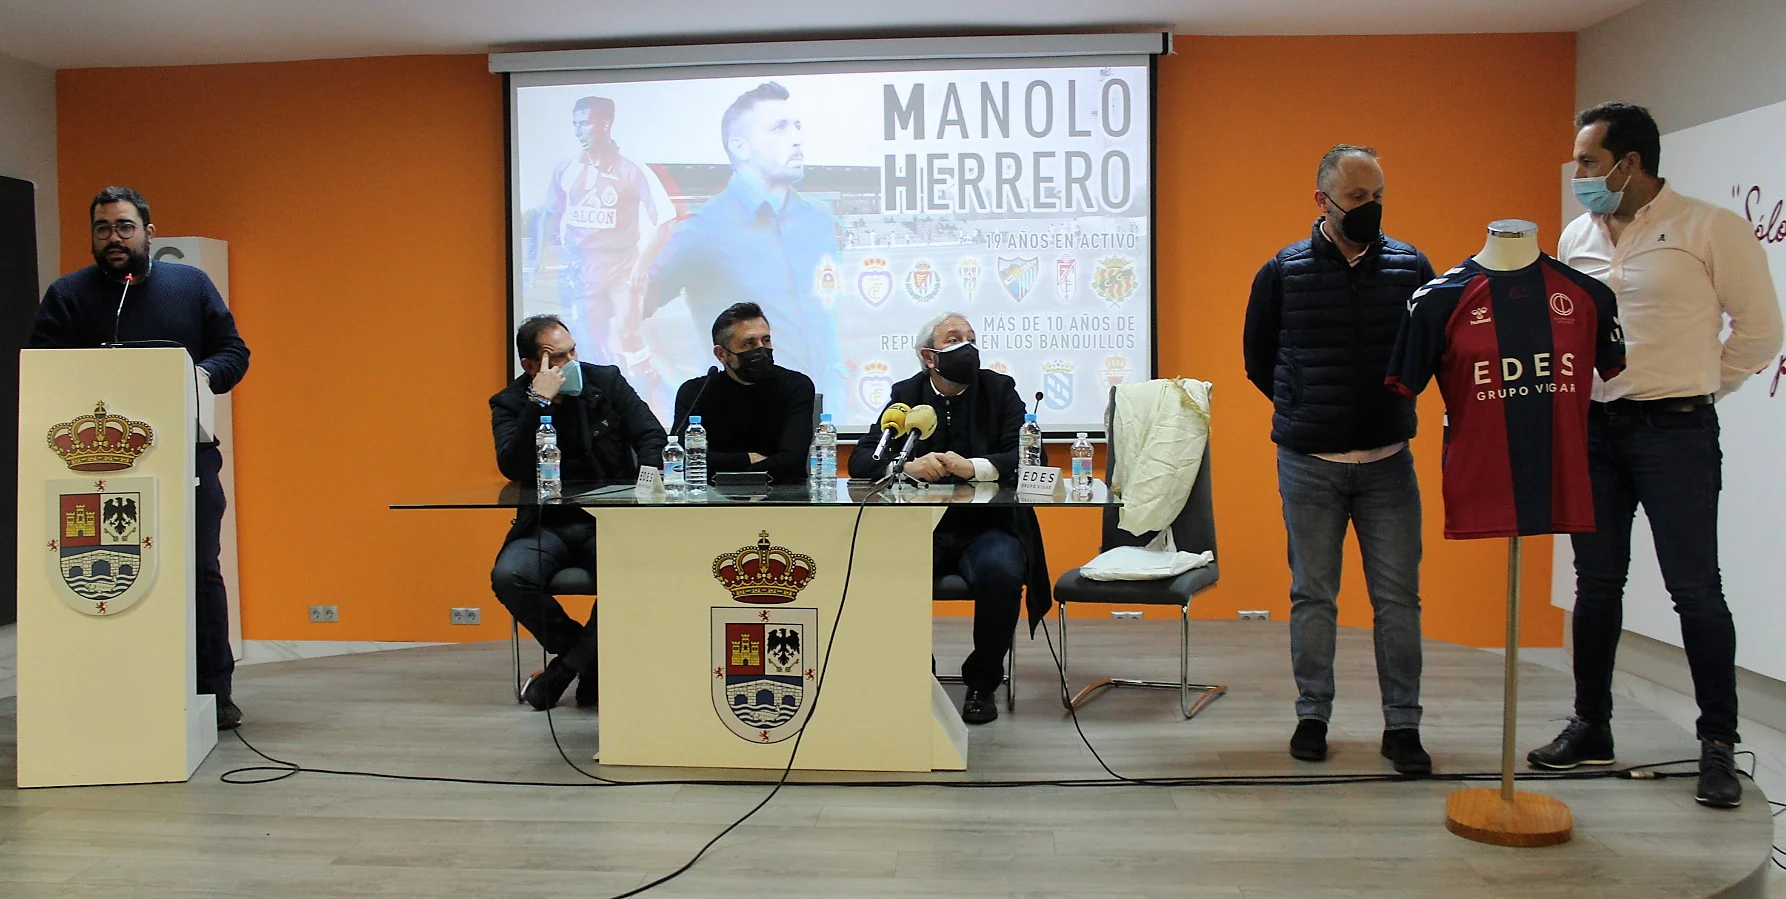 Una conferencia de Manuel Herrero supone el inicio de los actos del centenario del Iliturgi